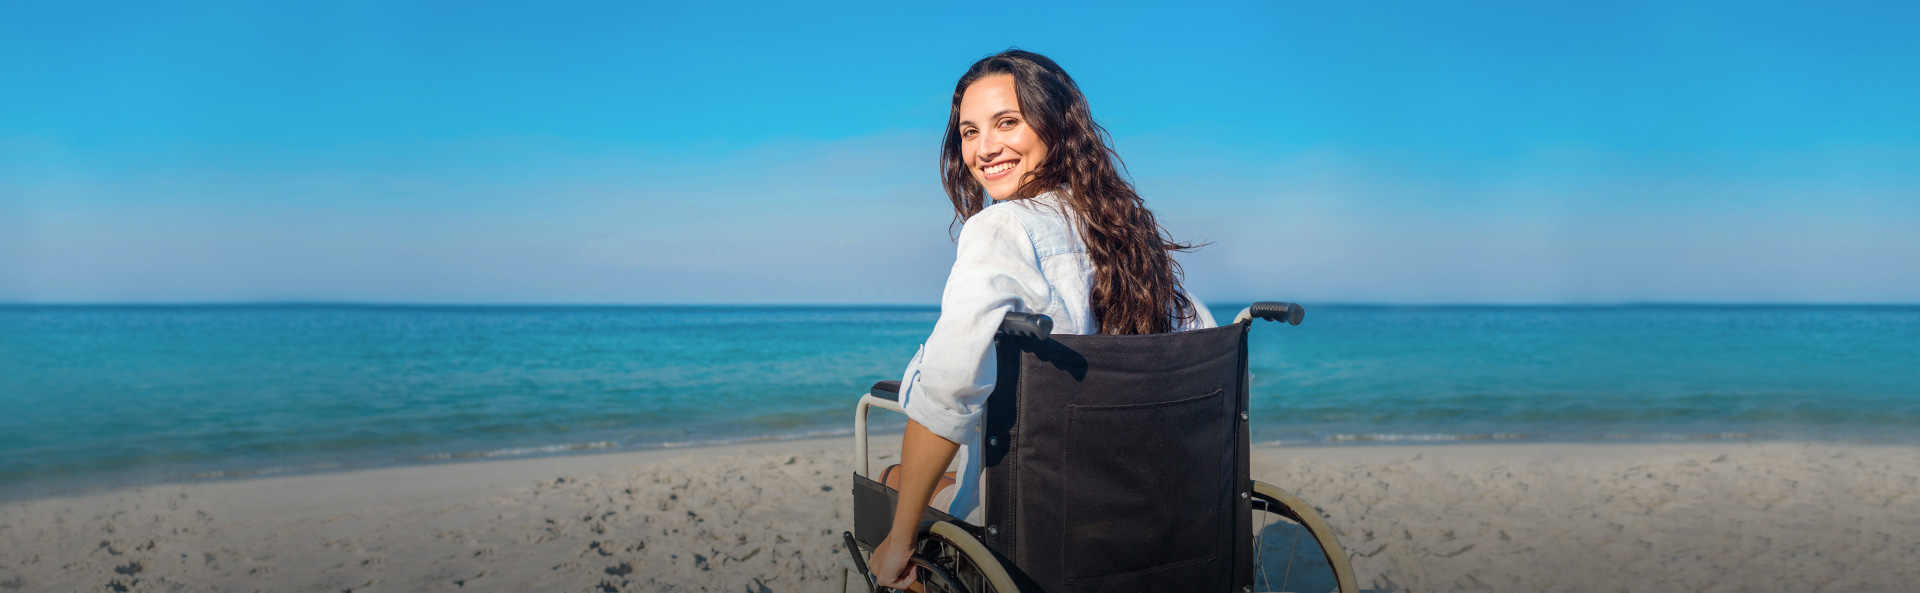 Безбарьерная среда: особенности путешествий для людей с инвалидностью